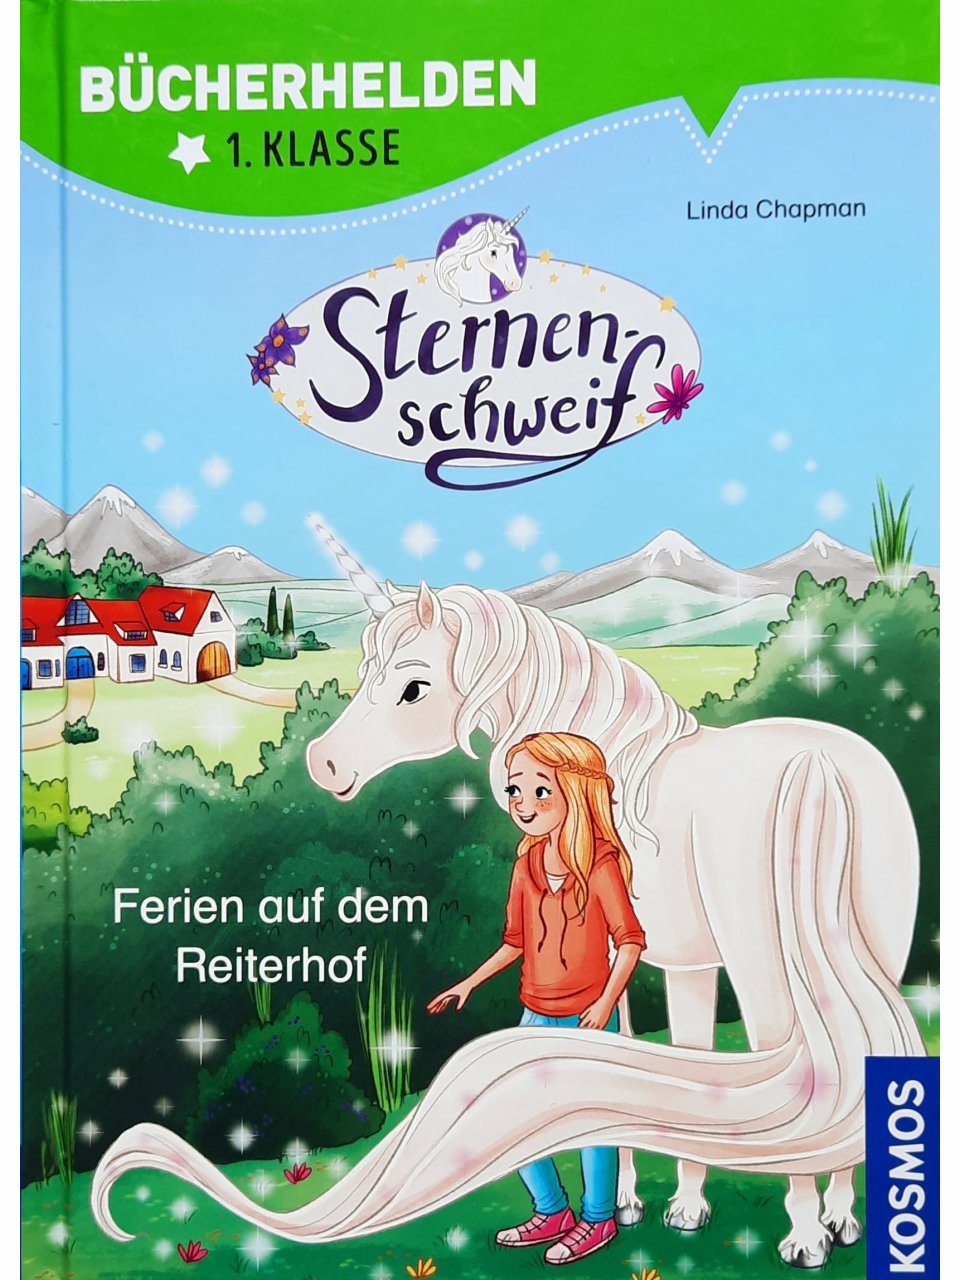 Sternenschweif - Ferien auf dem Reiterhof (Bücherhelden 1. Klasse)